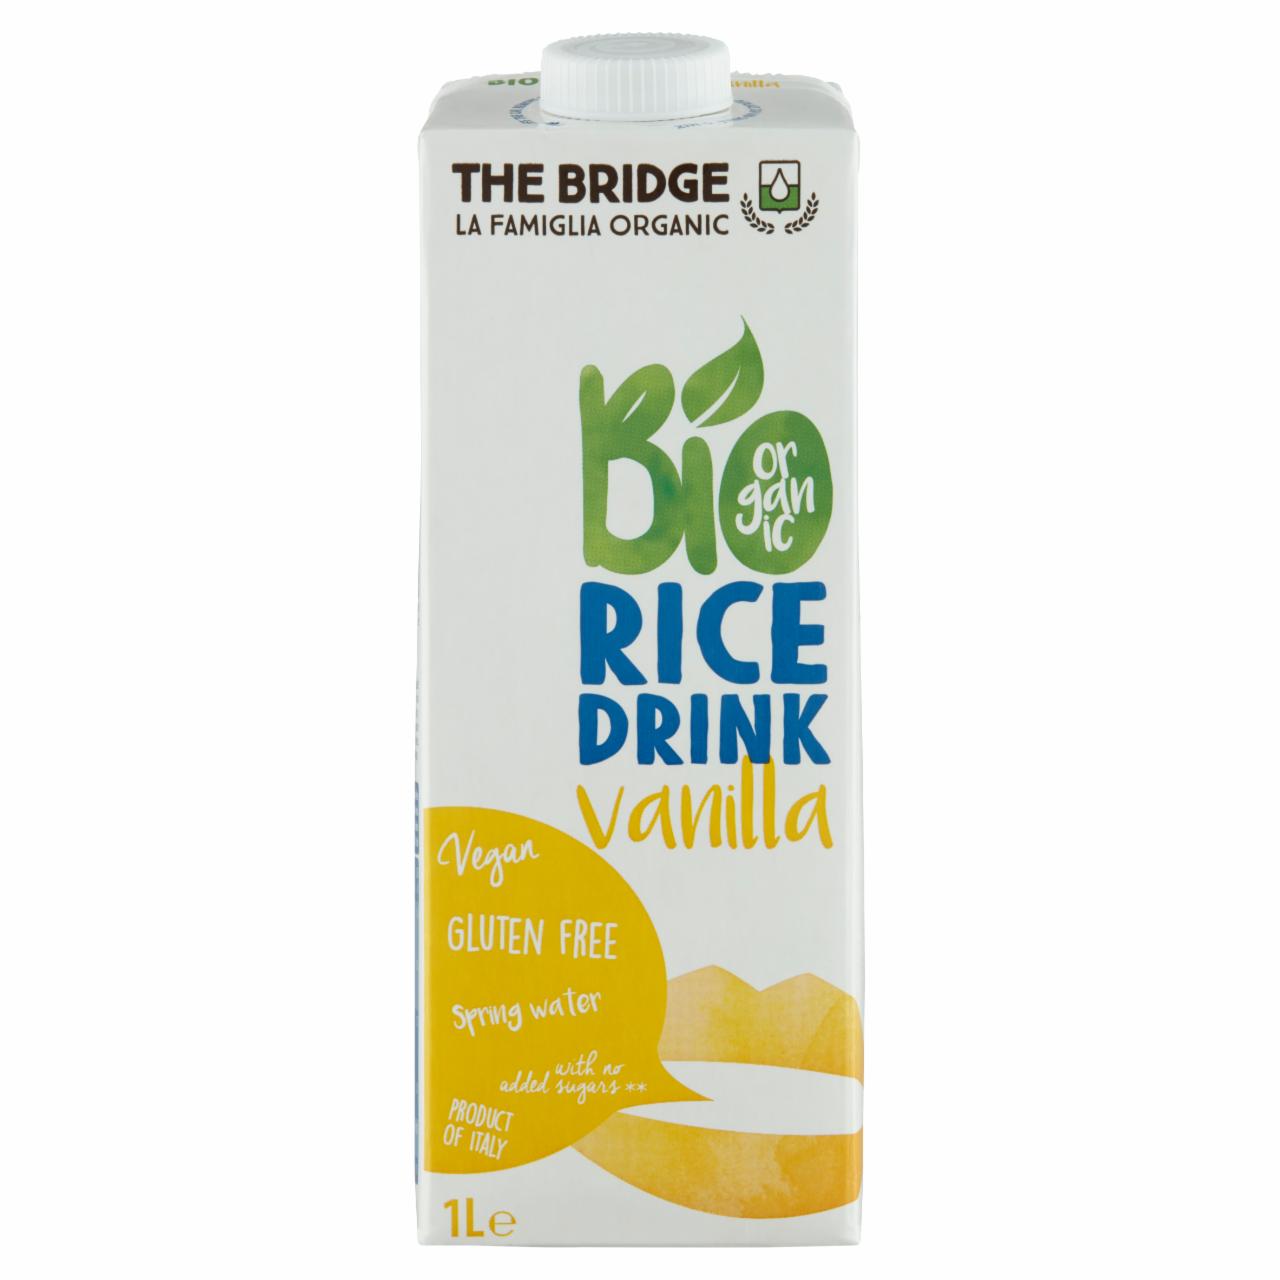 Képek - UHT BIO gluténmentes vaníliás rizsital The Bridge